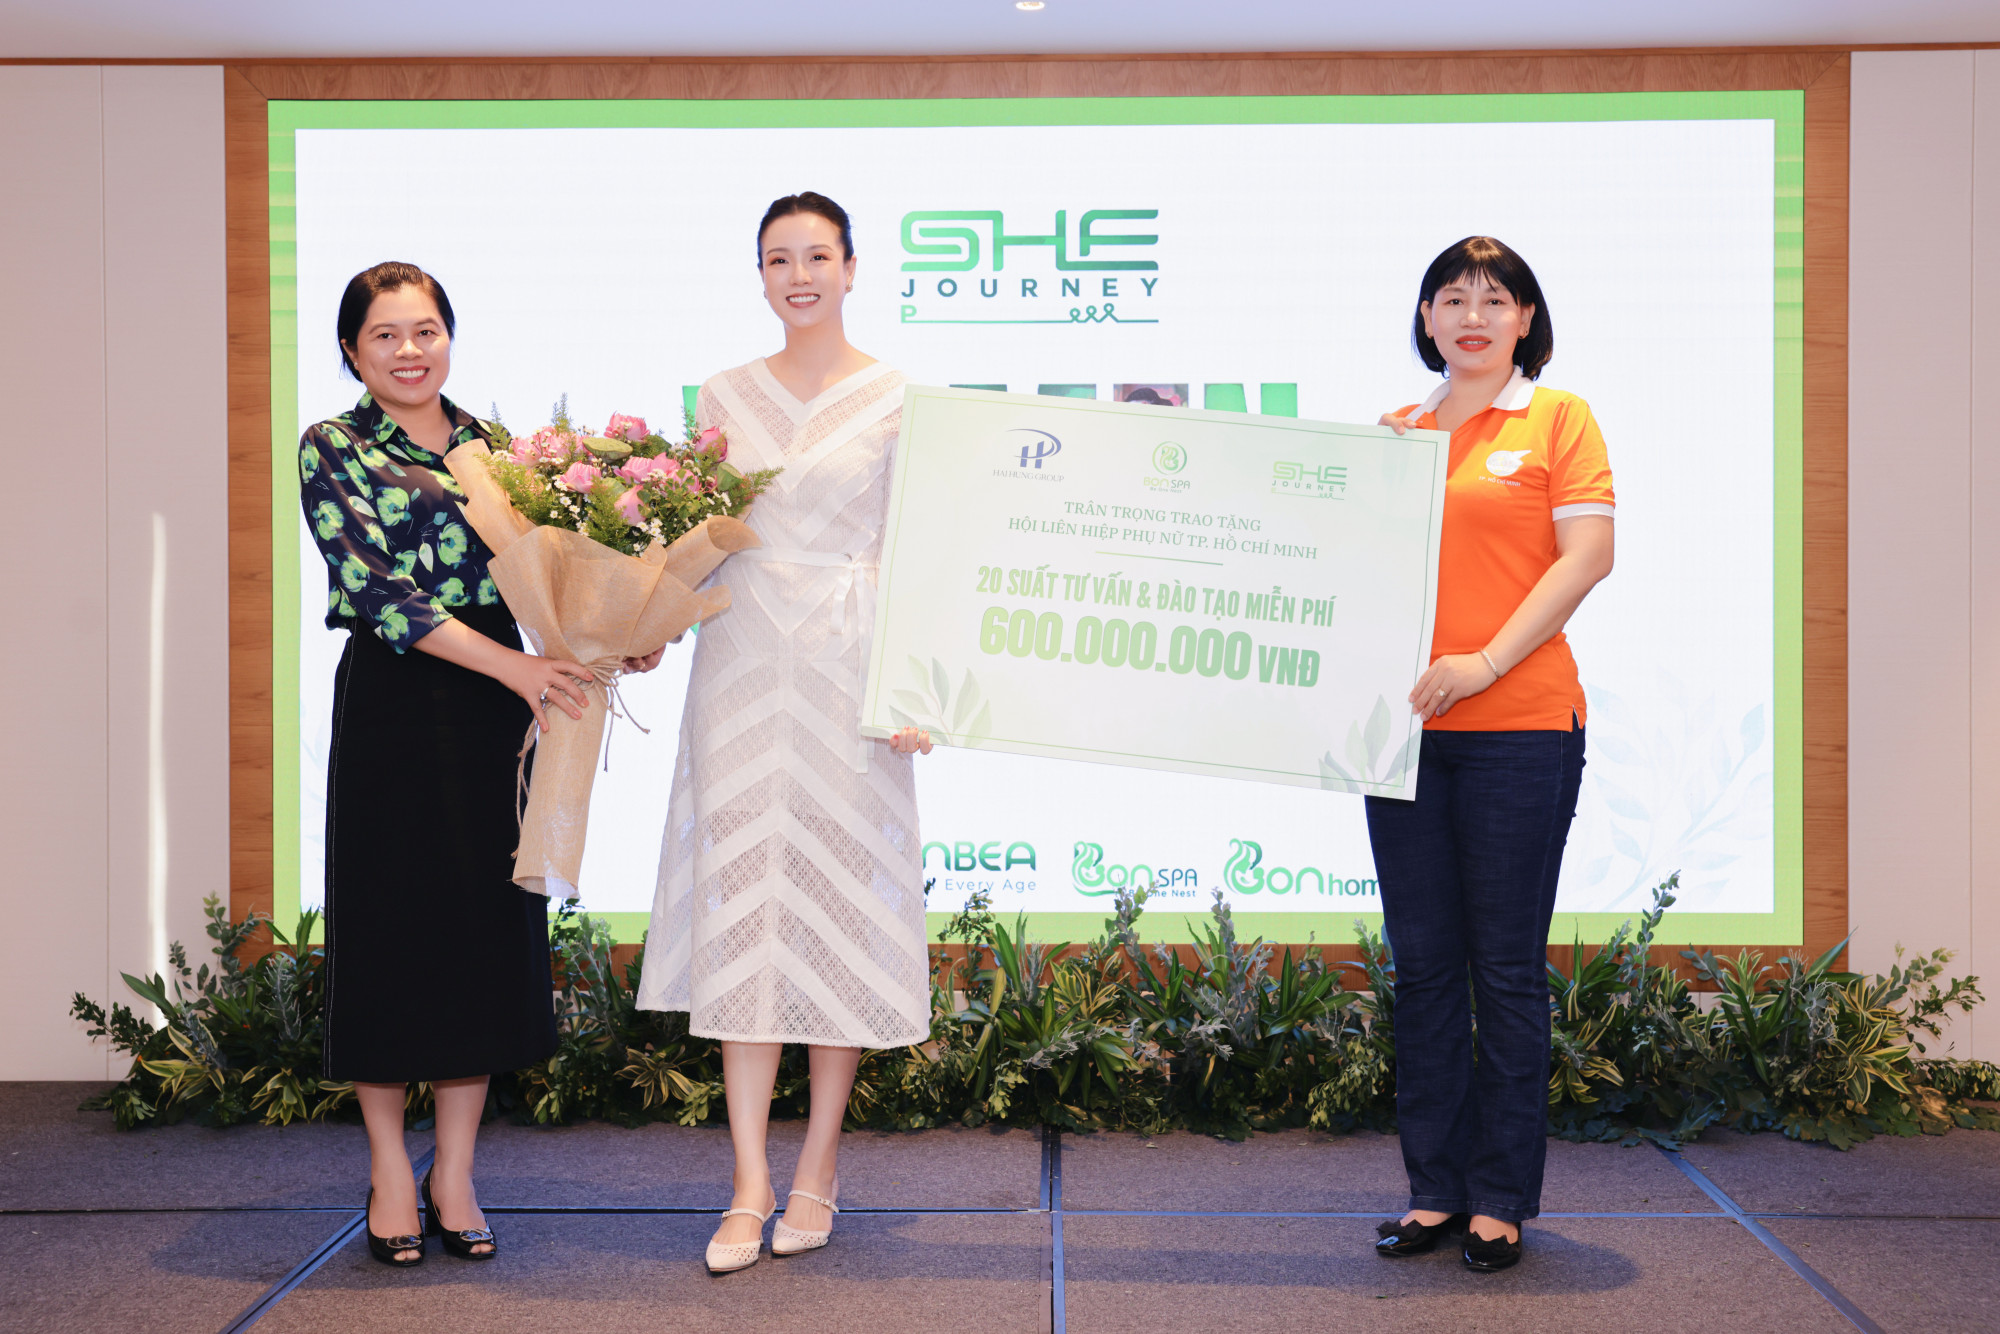 Doanh nhân Trang Phương trao bảng tượng trưng 600 triệu đồng hỗ trợ chị em, phụ nữ khởi nghiệp